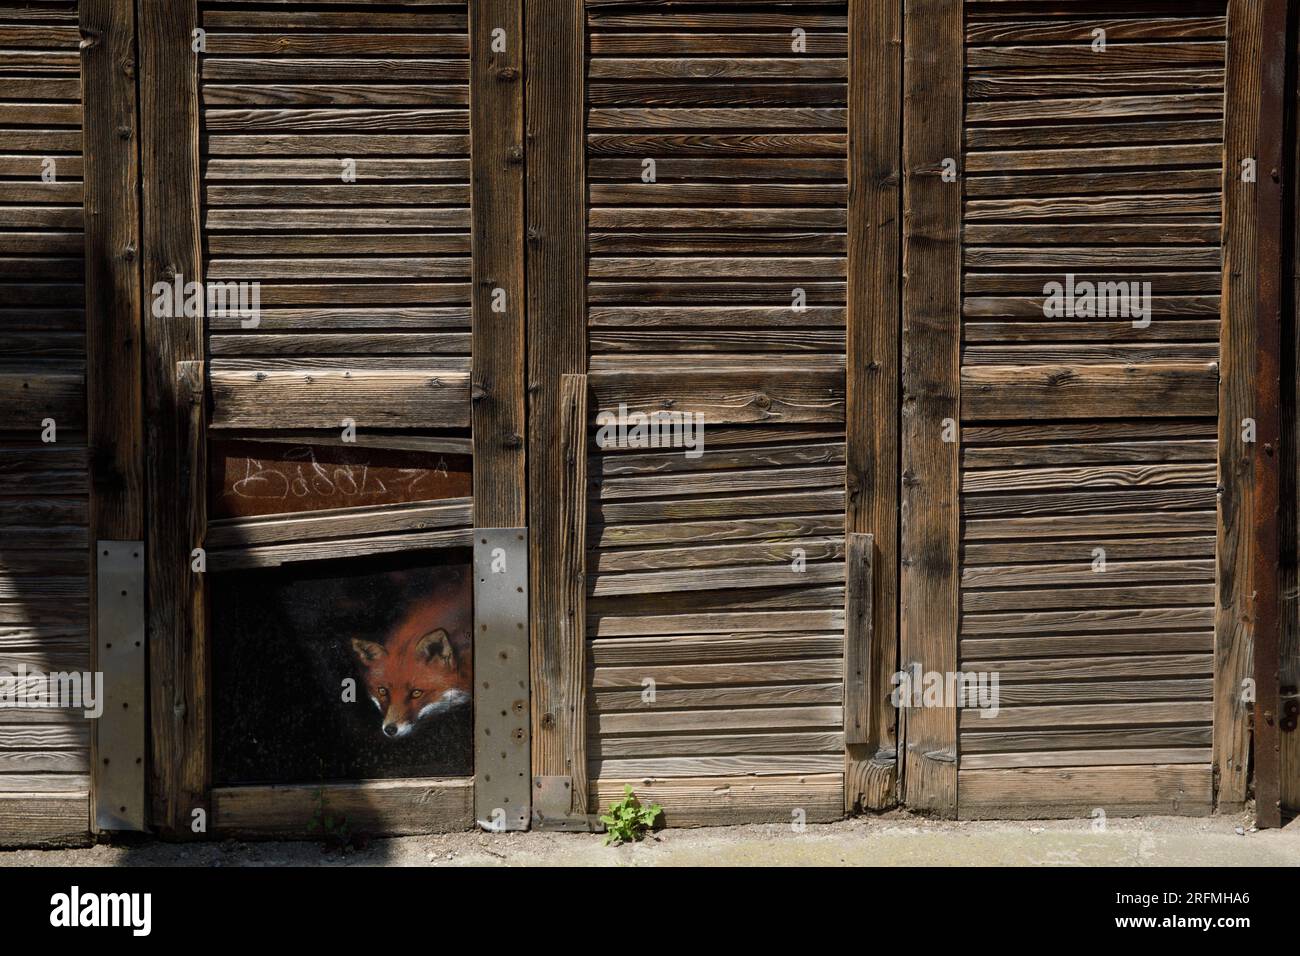 France, Hauts-de-France region, Somme department, Amiens, Saint-Leu quarter, louvred shutters, trompe l'œil, fox Stock Photo